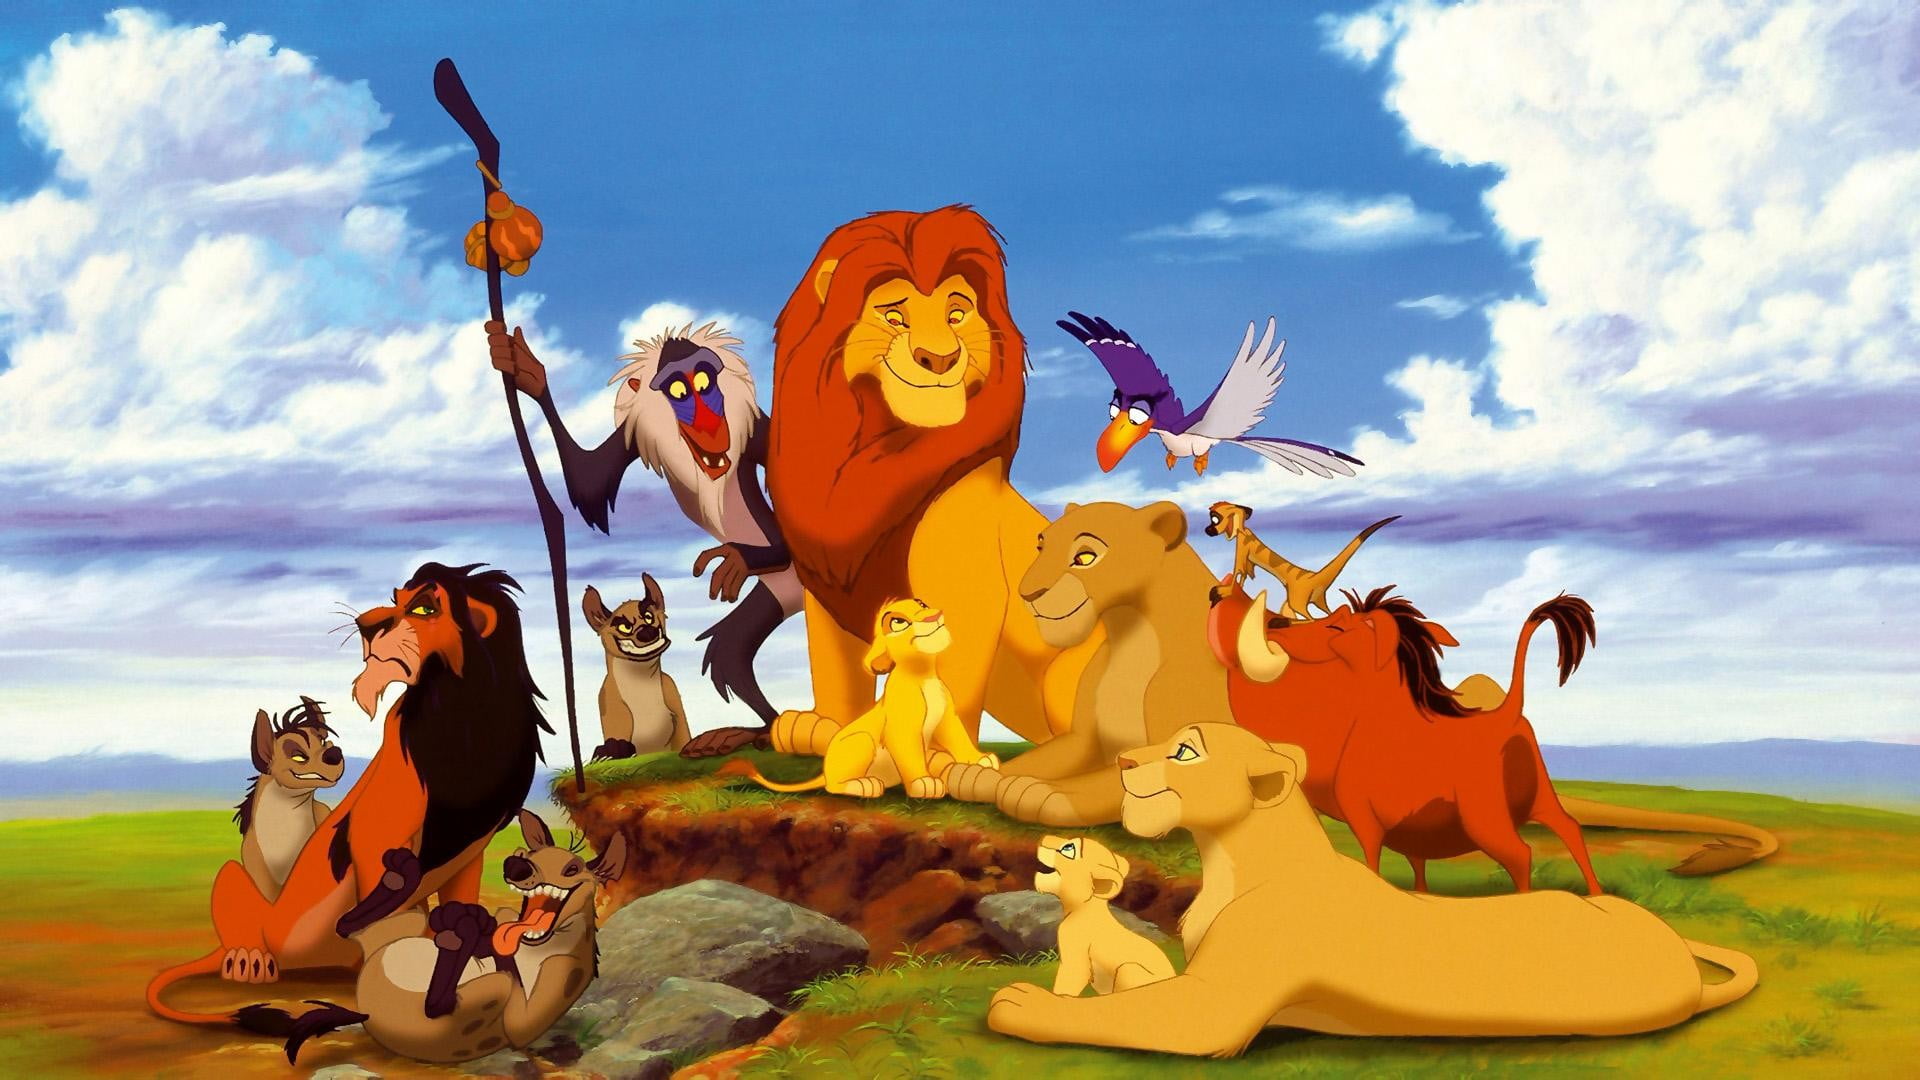 The Lion king cartoon movie, movies, Rafiki, Disney, Mufasa, Simba